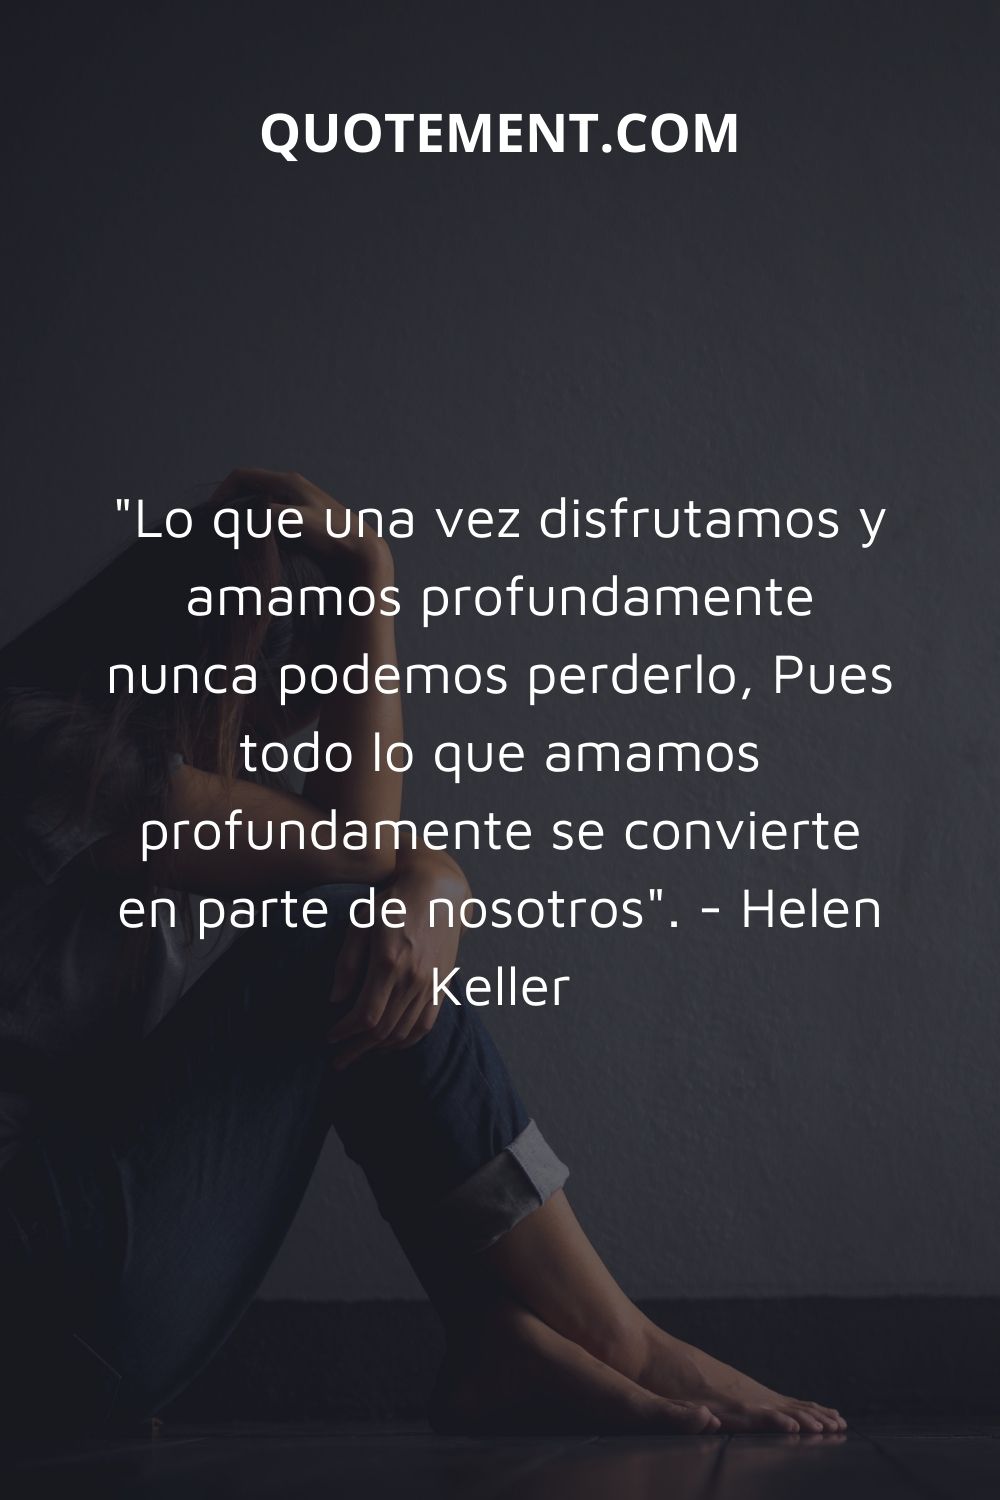 "Lo que una vez disfrutamos y amamos profundamente nunca podremos perderlo, Porque todo lo que amamos profundamente se convierte en parte de nosotros". - Helen Keller